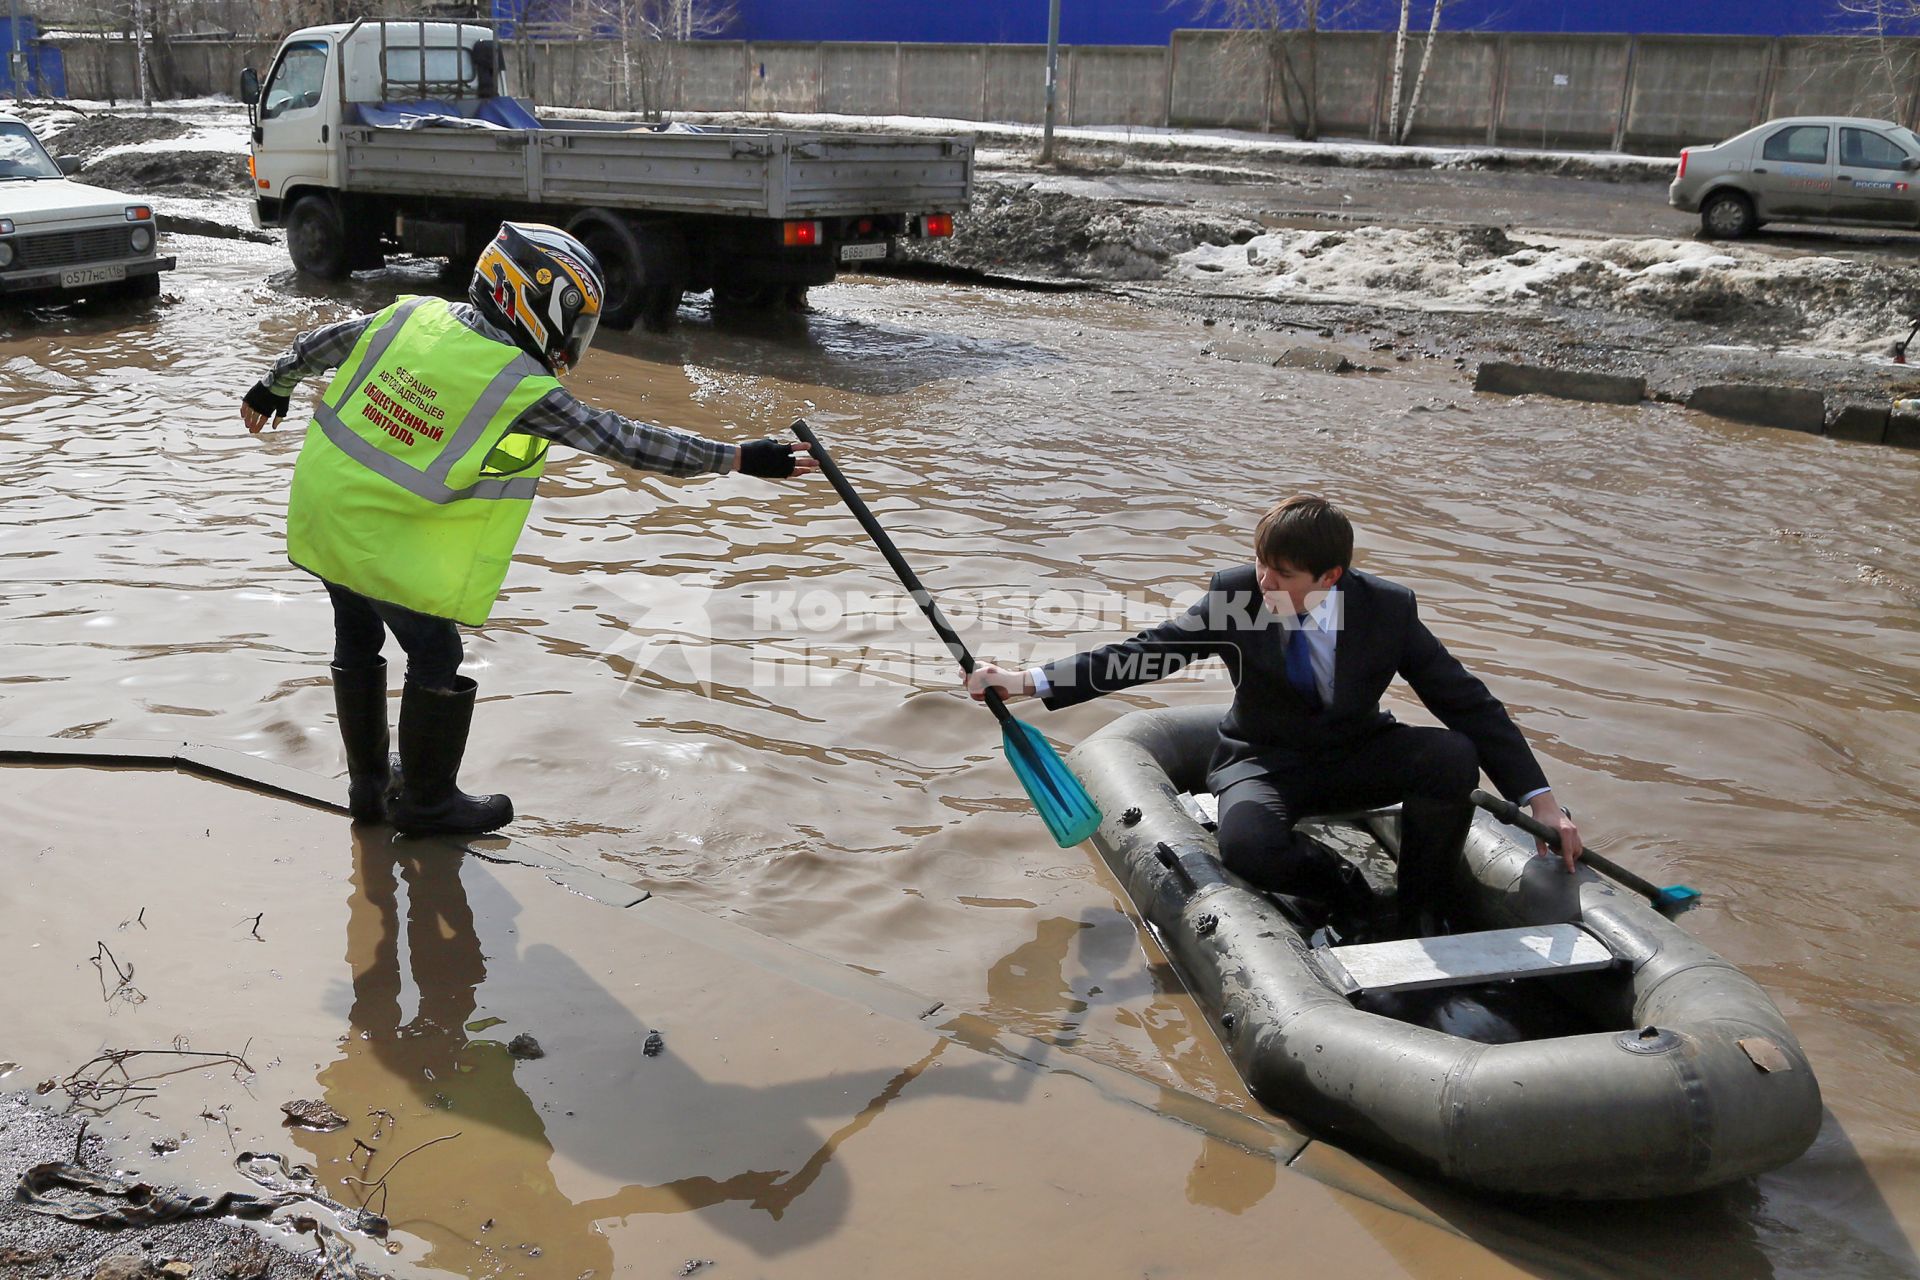 Из-за быстрого таяния снегов весенние паводковые воды затопили проезжую часть на улицах. На снимке: мужчины на резиновой лодке на затопленной улице.